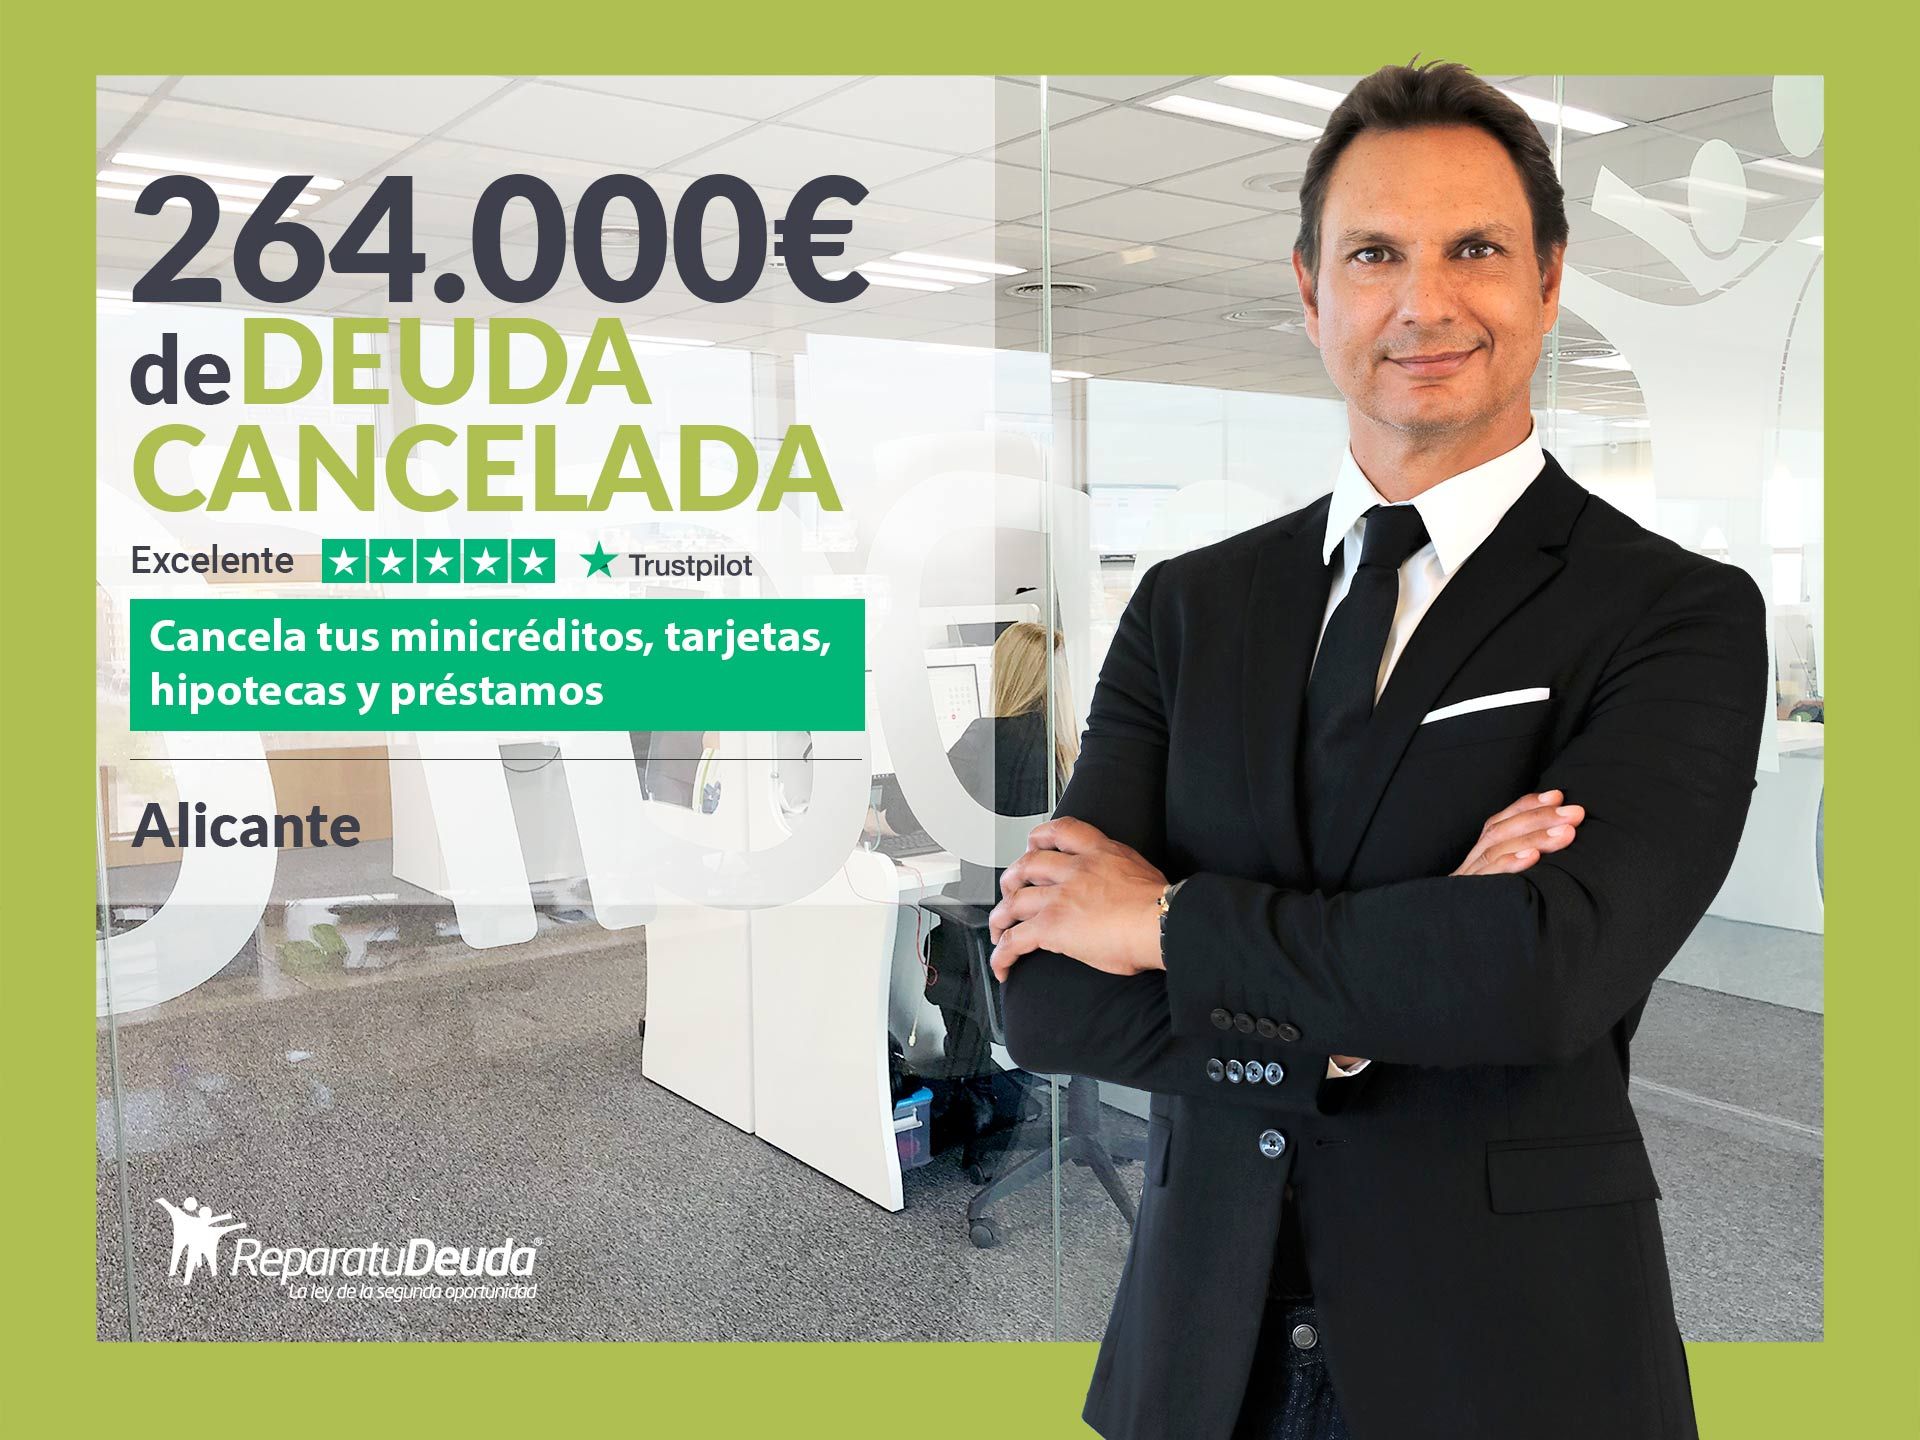 Repara tu Deuda Abogados cancela 264.000? en Alicante (C. Valenciana) con la Ley de la Segunda Oportunidad